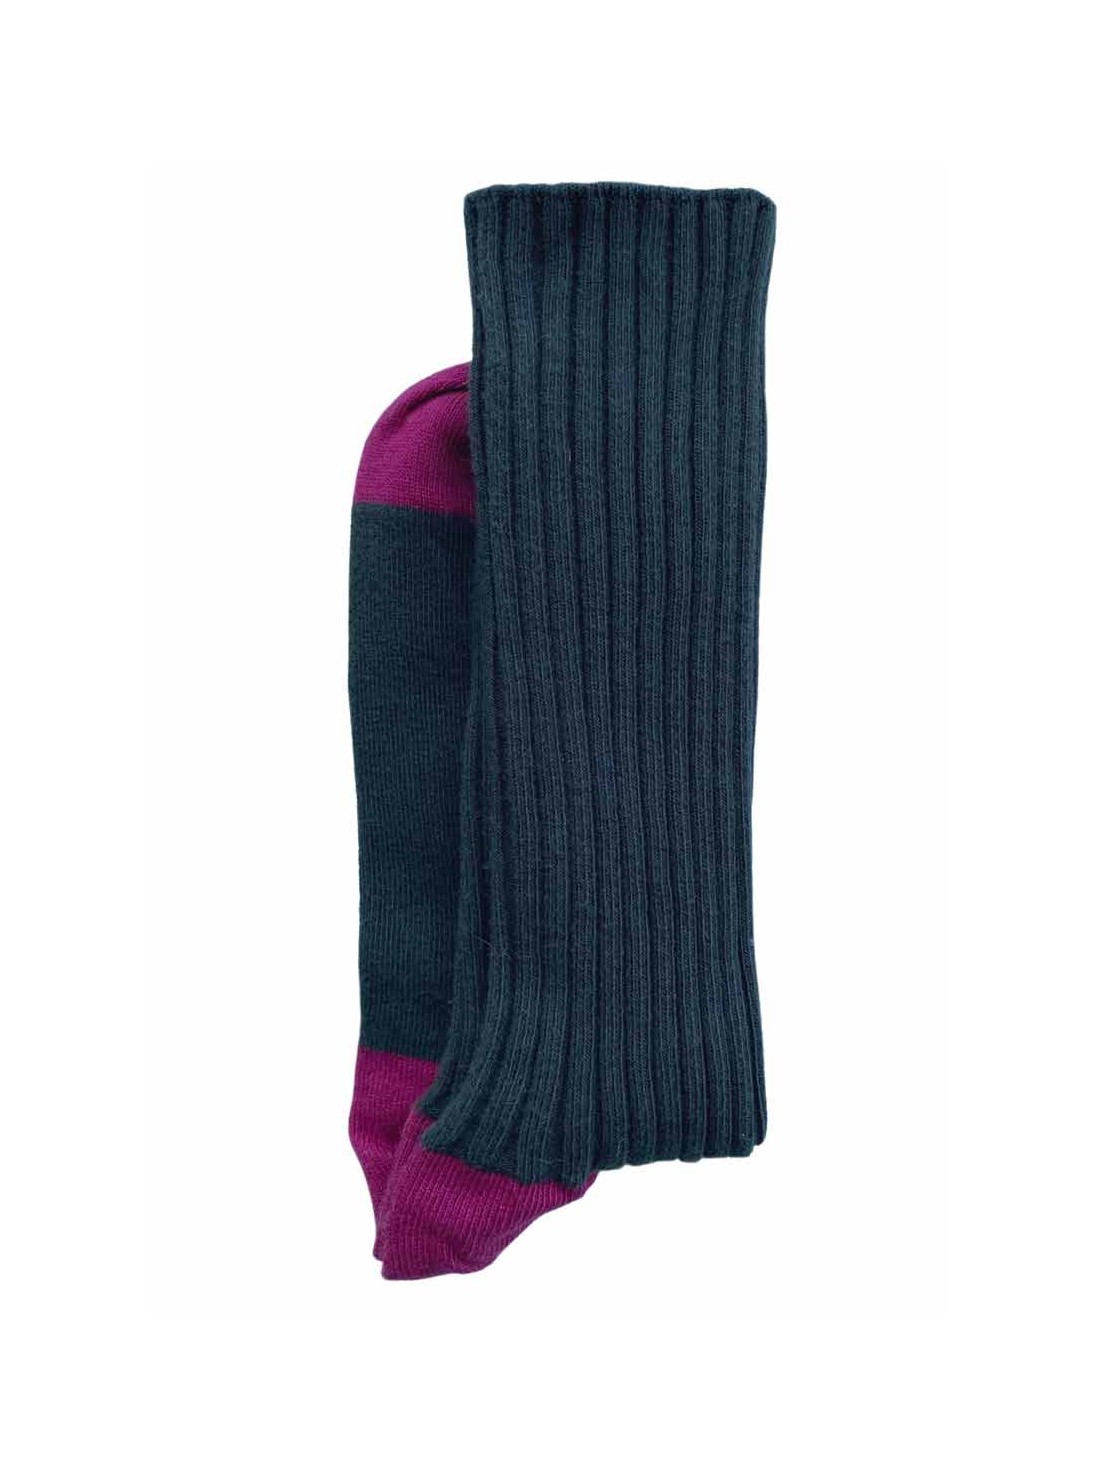 chaussettes coton bicolore noir rose unisexe